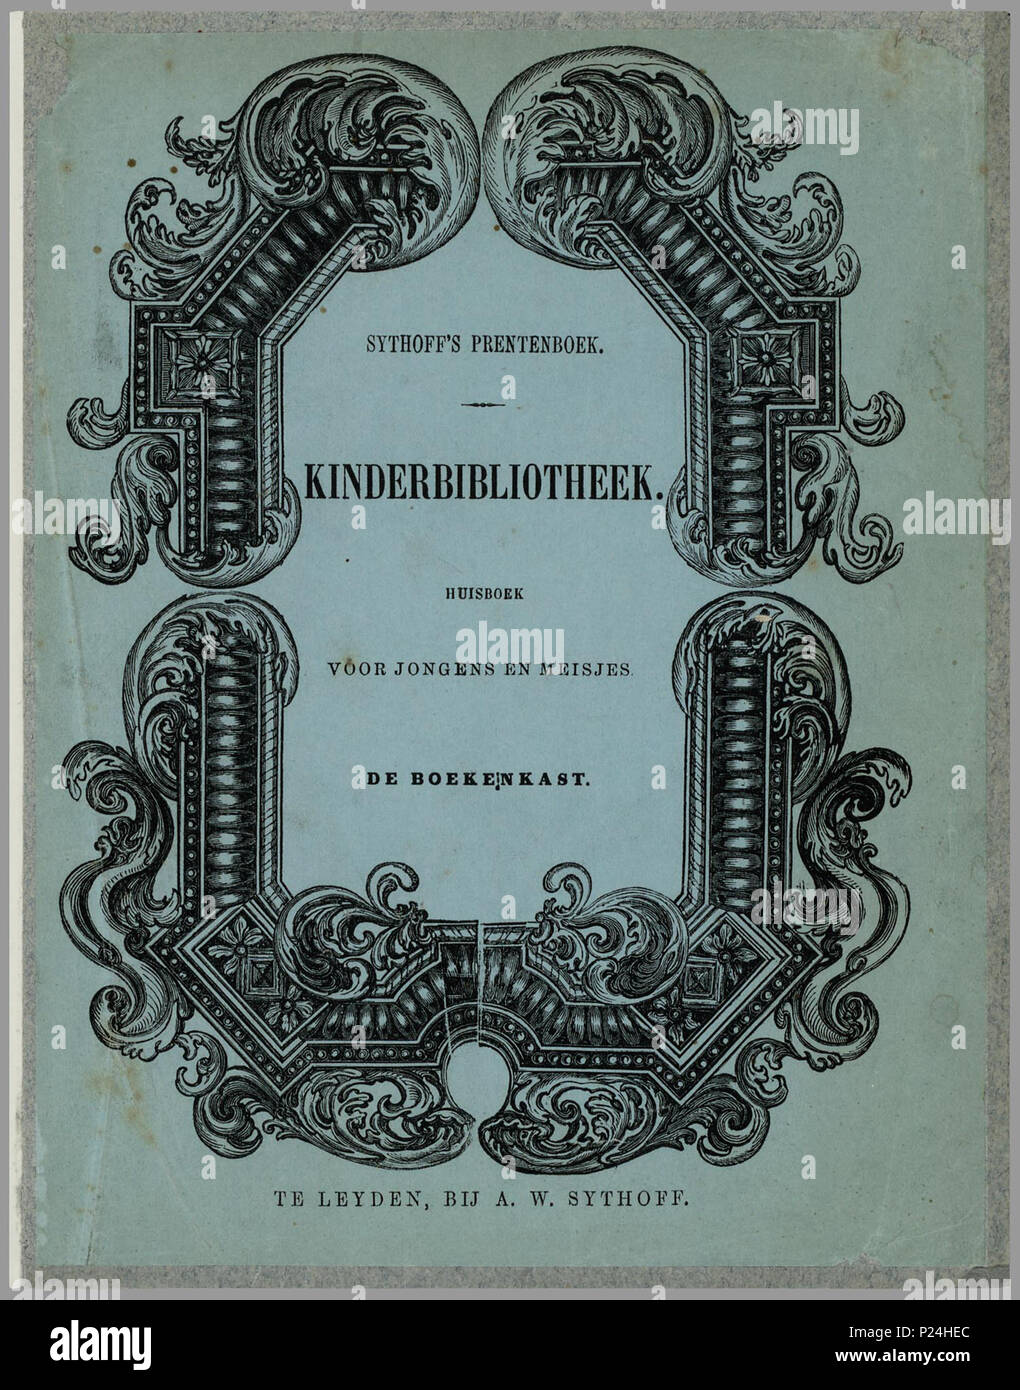 Sythoffs Prentenboek De Boekenkast Verzameling